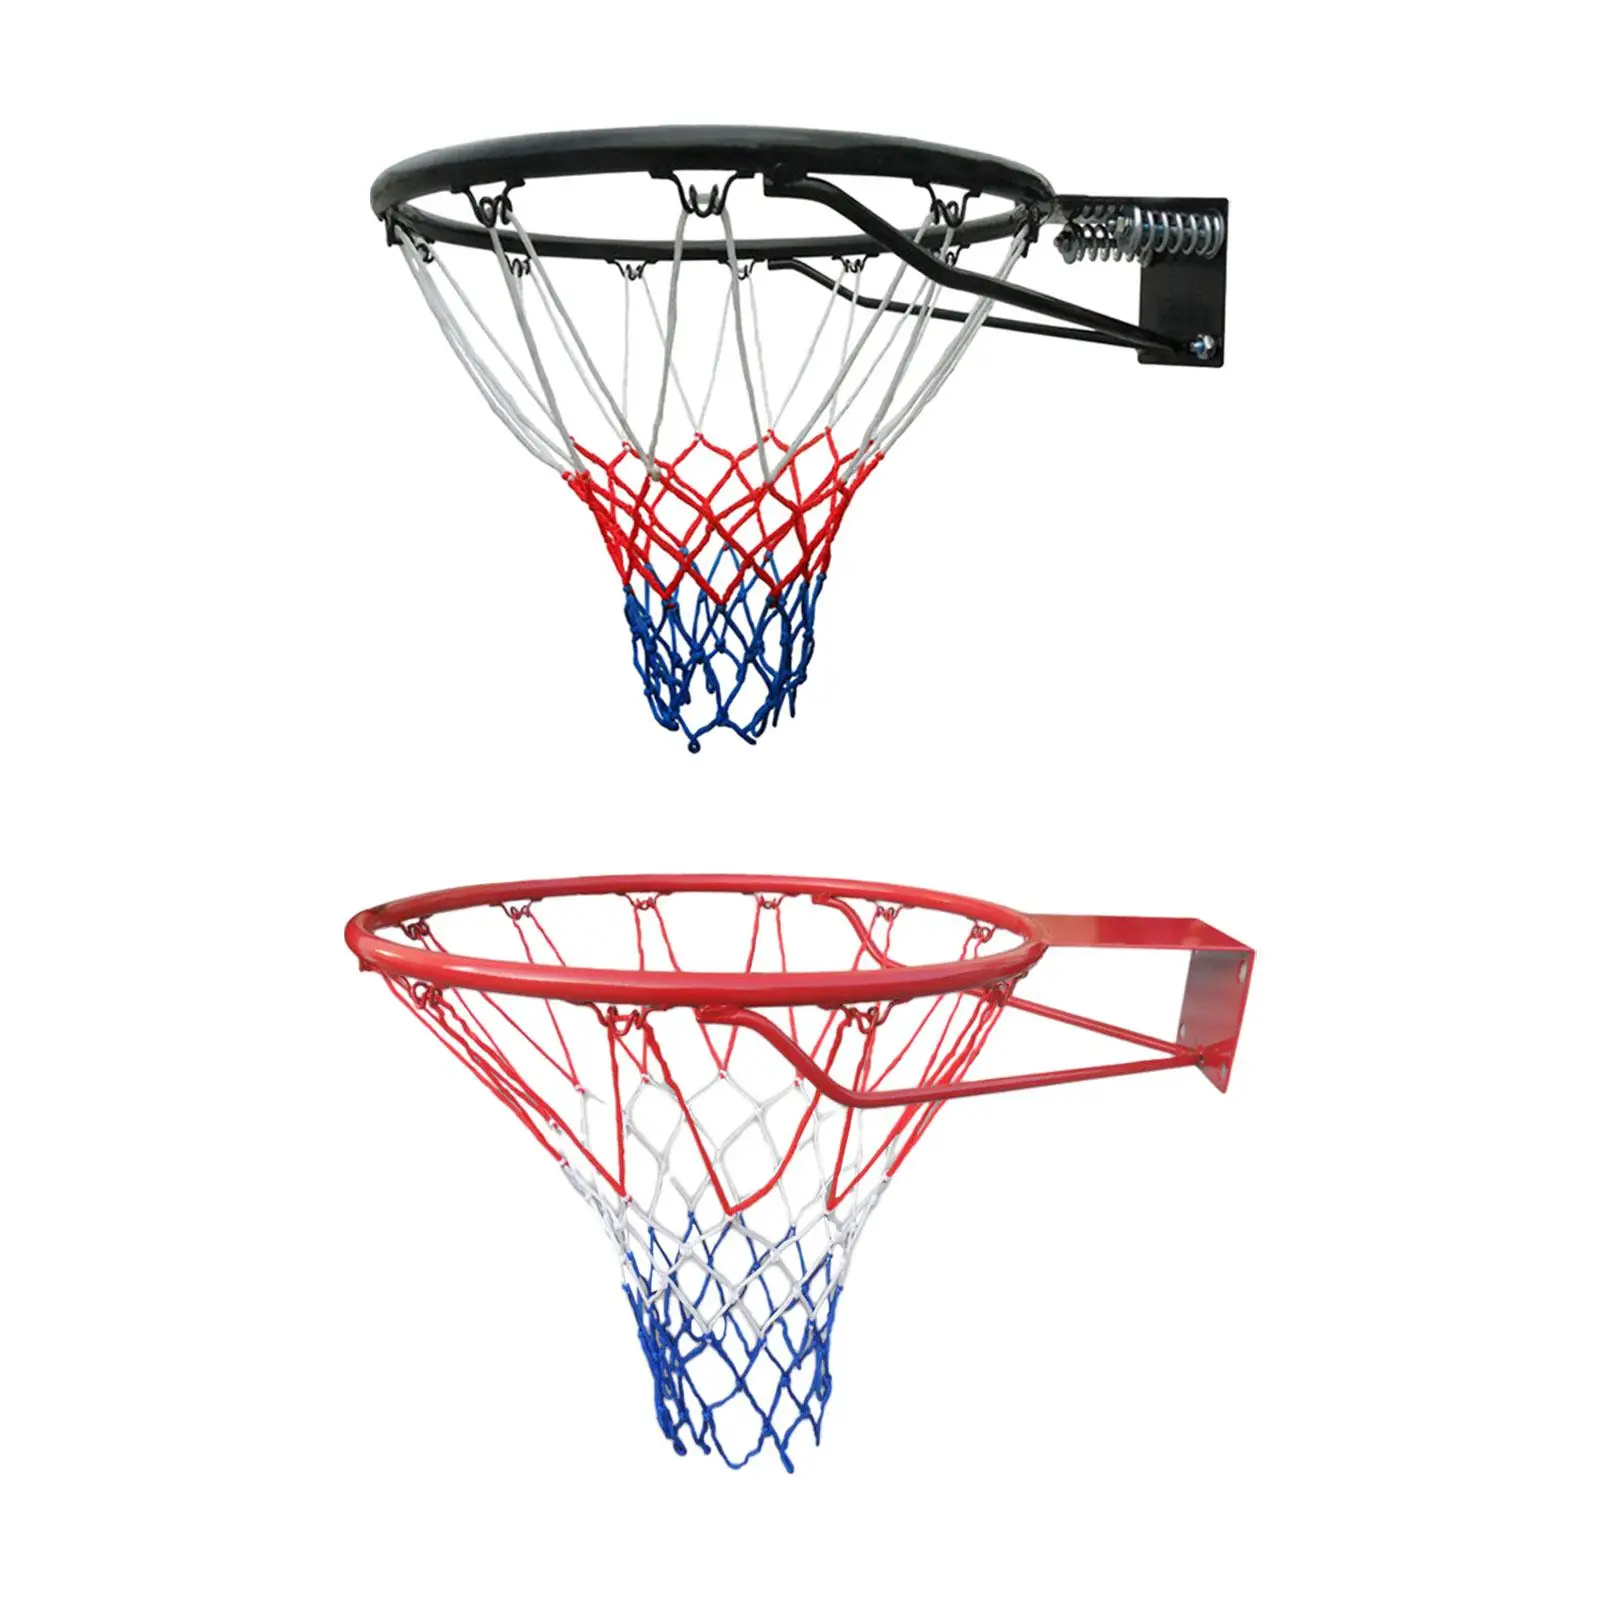 

Баскетбольный обод 45 см, сверхпрочная универсальная стальная рама, настенный баскетбольный ободок с сеткой для игры в помещении и на улице, подвесной ободок